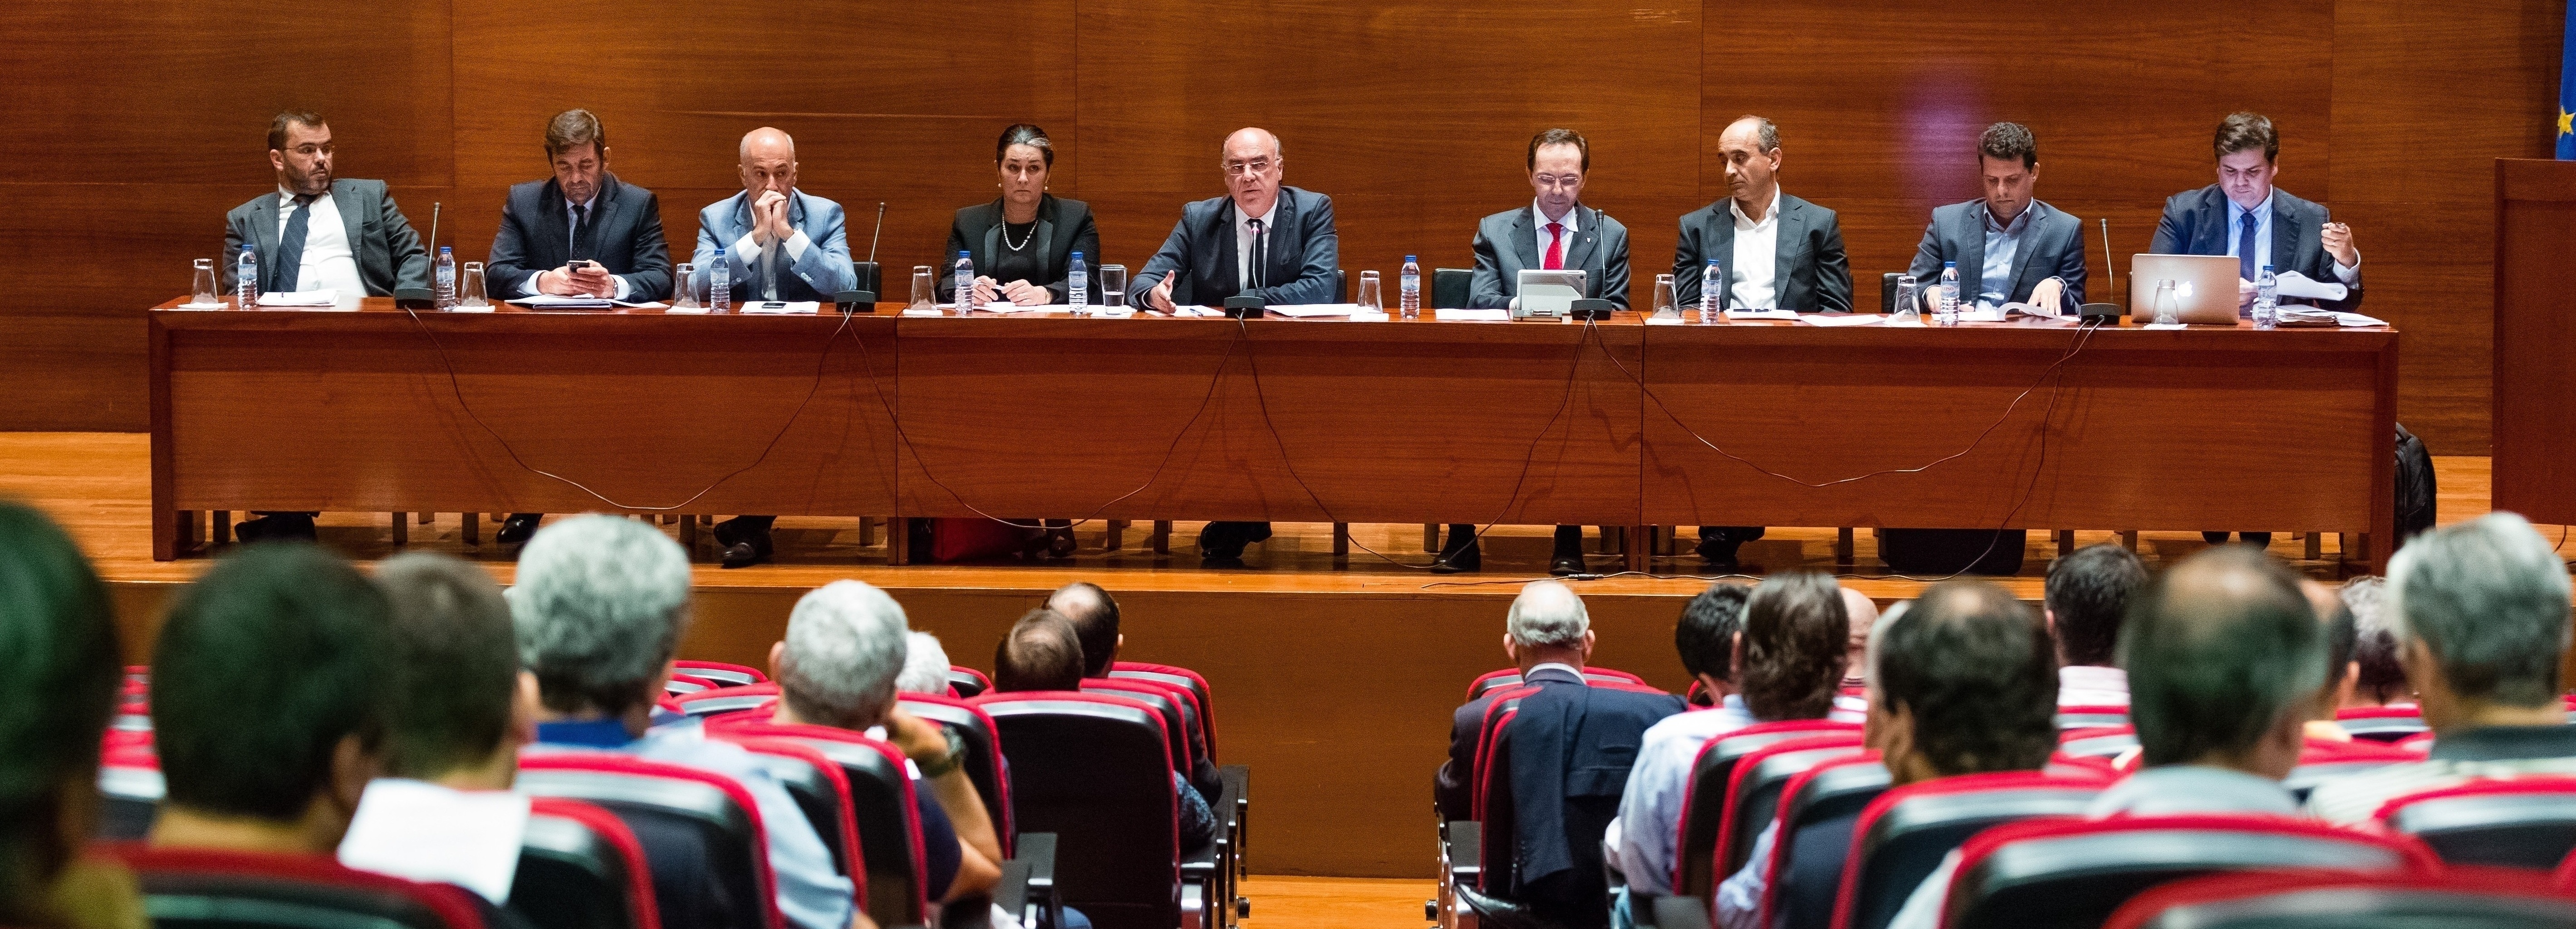 Apresentação das decisões referentes ao Contrato de Concessão das Águas e Saneamento de Barcelos